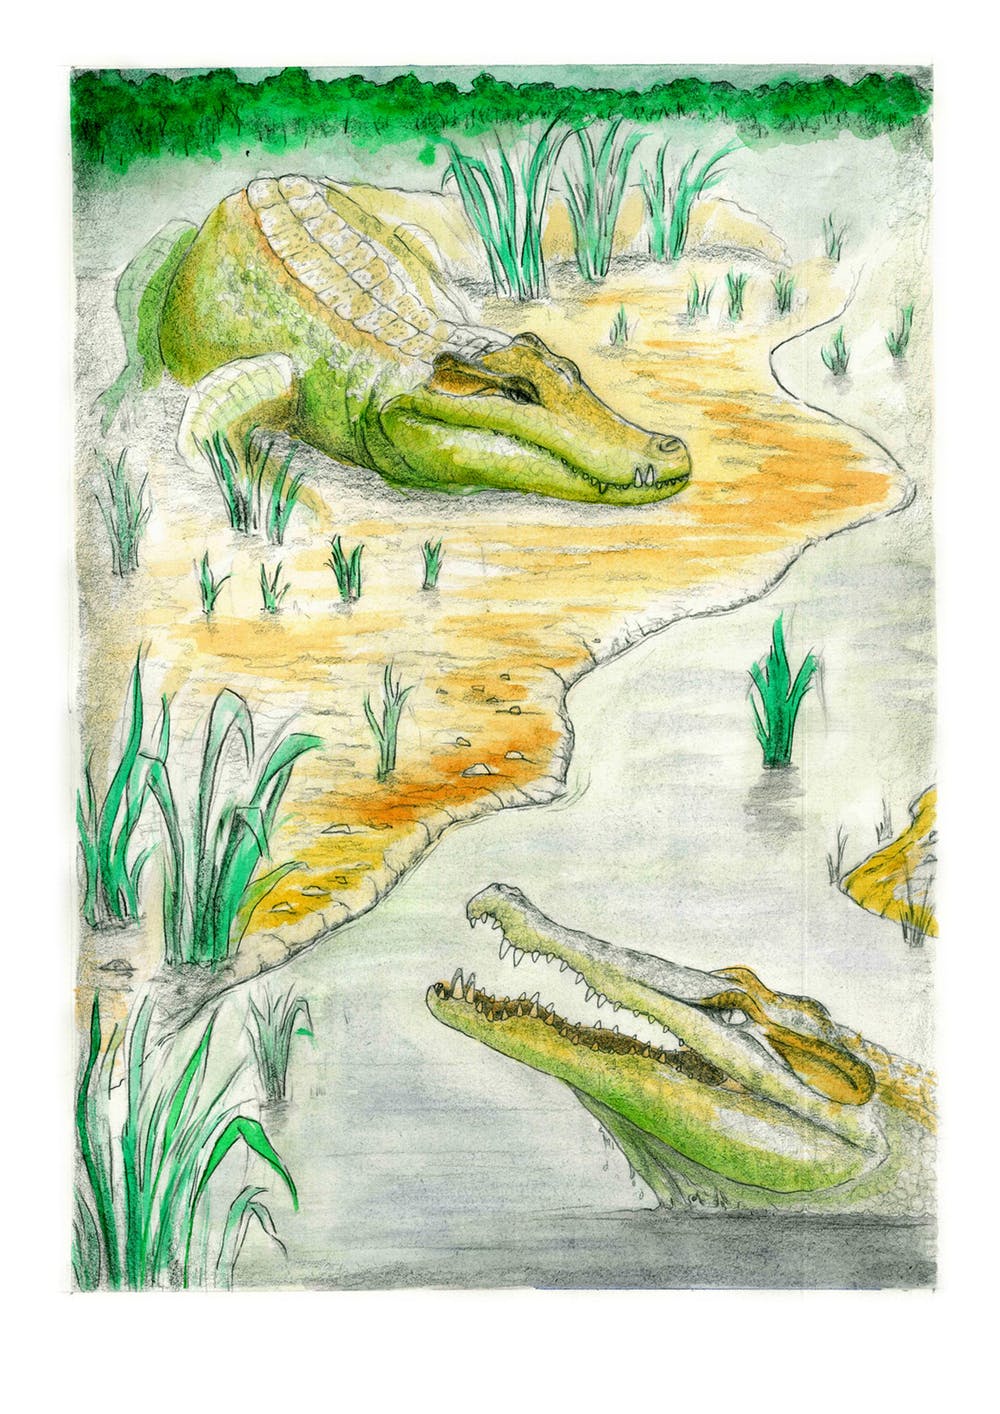 Reconstrucción de los cocodrilos descubiertos en la mina de Ariño (Teruel). Dinópolis, Author provided